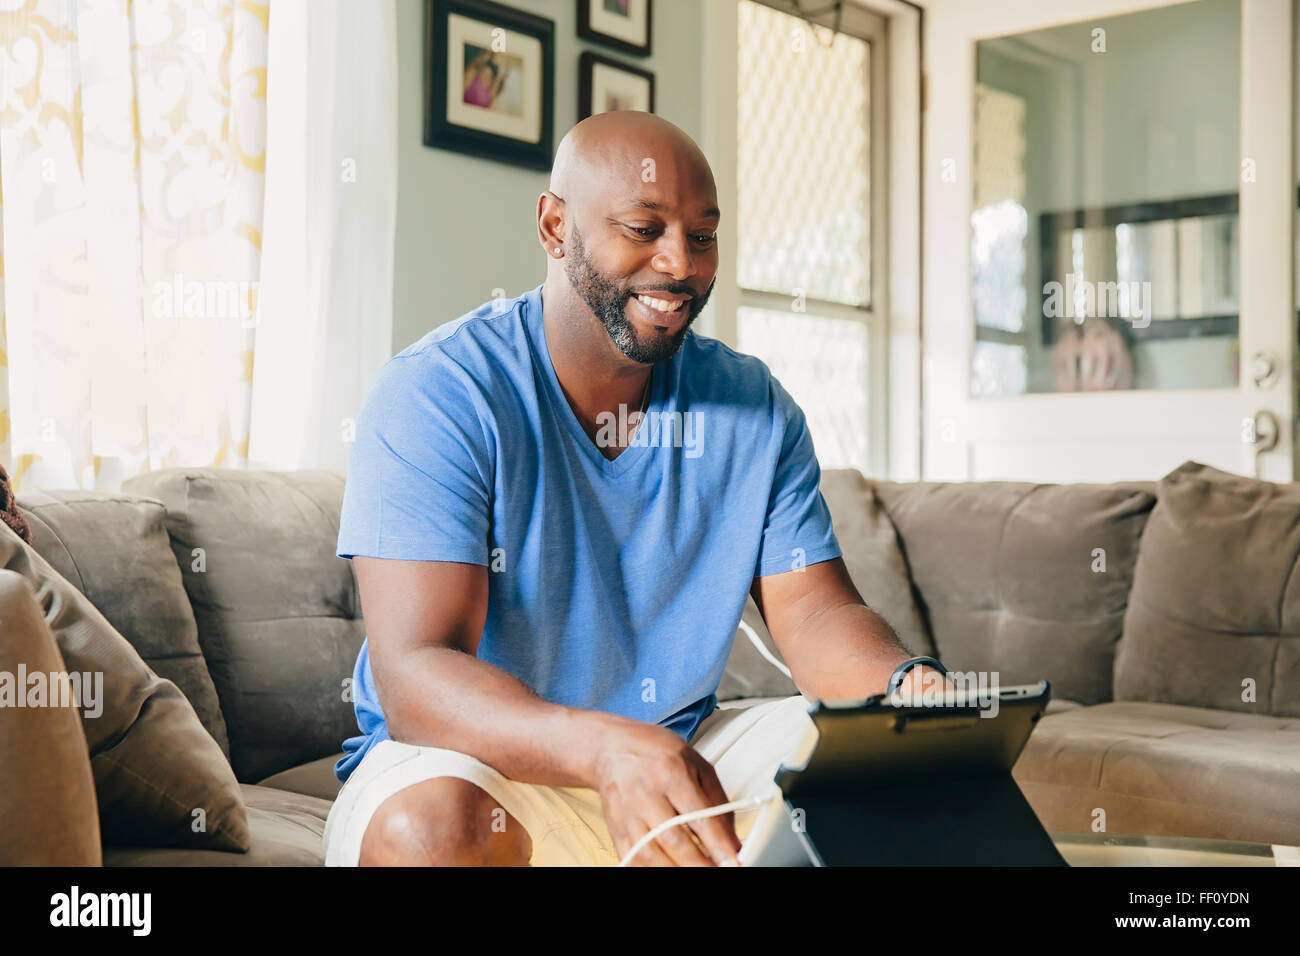 Black man using digital tablet in living room Banque D'Images